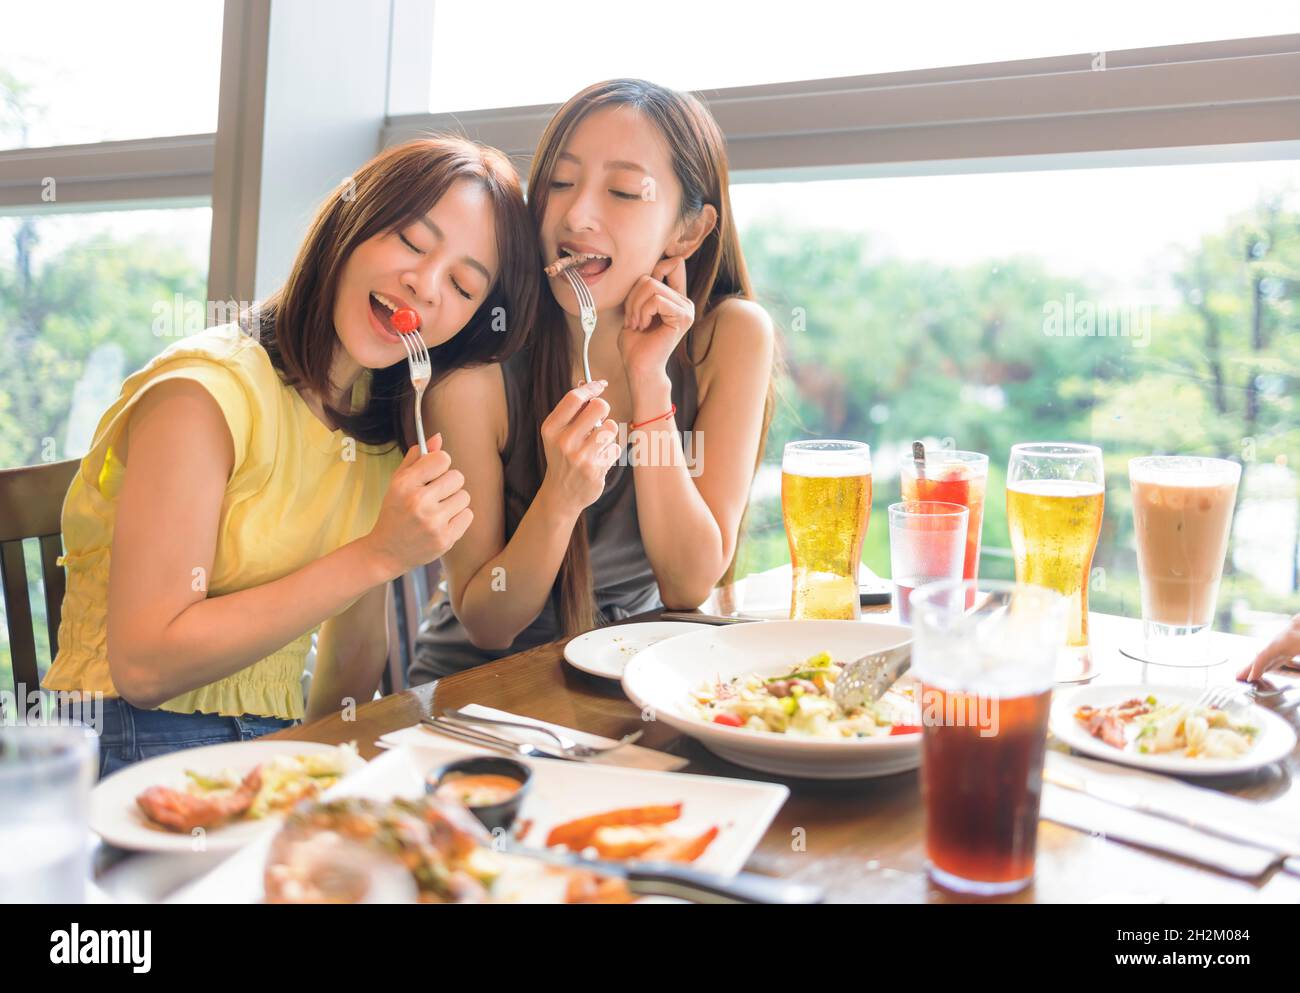 De joyeuses copines qui apprécient la nourriture et les boissons au restaurant Banque D'Images